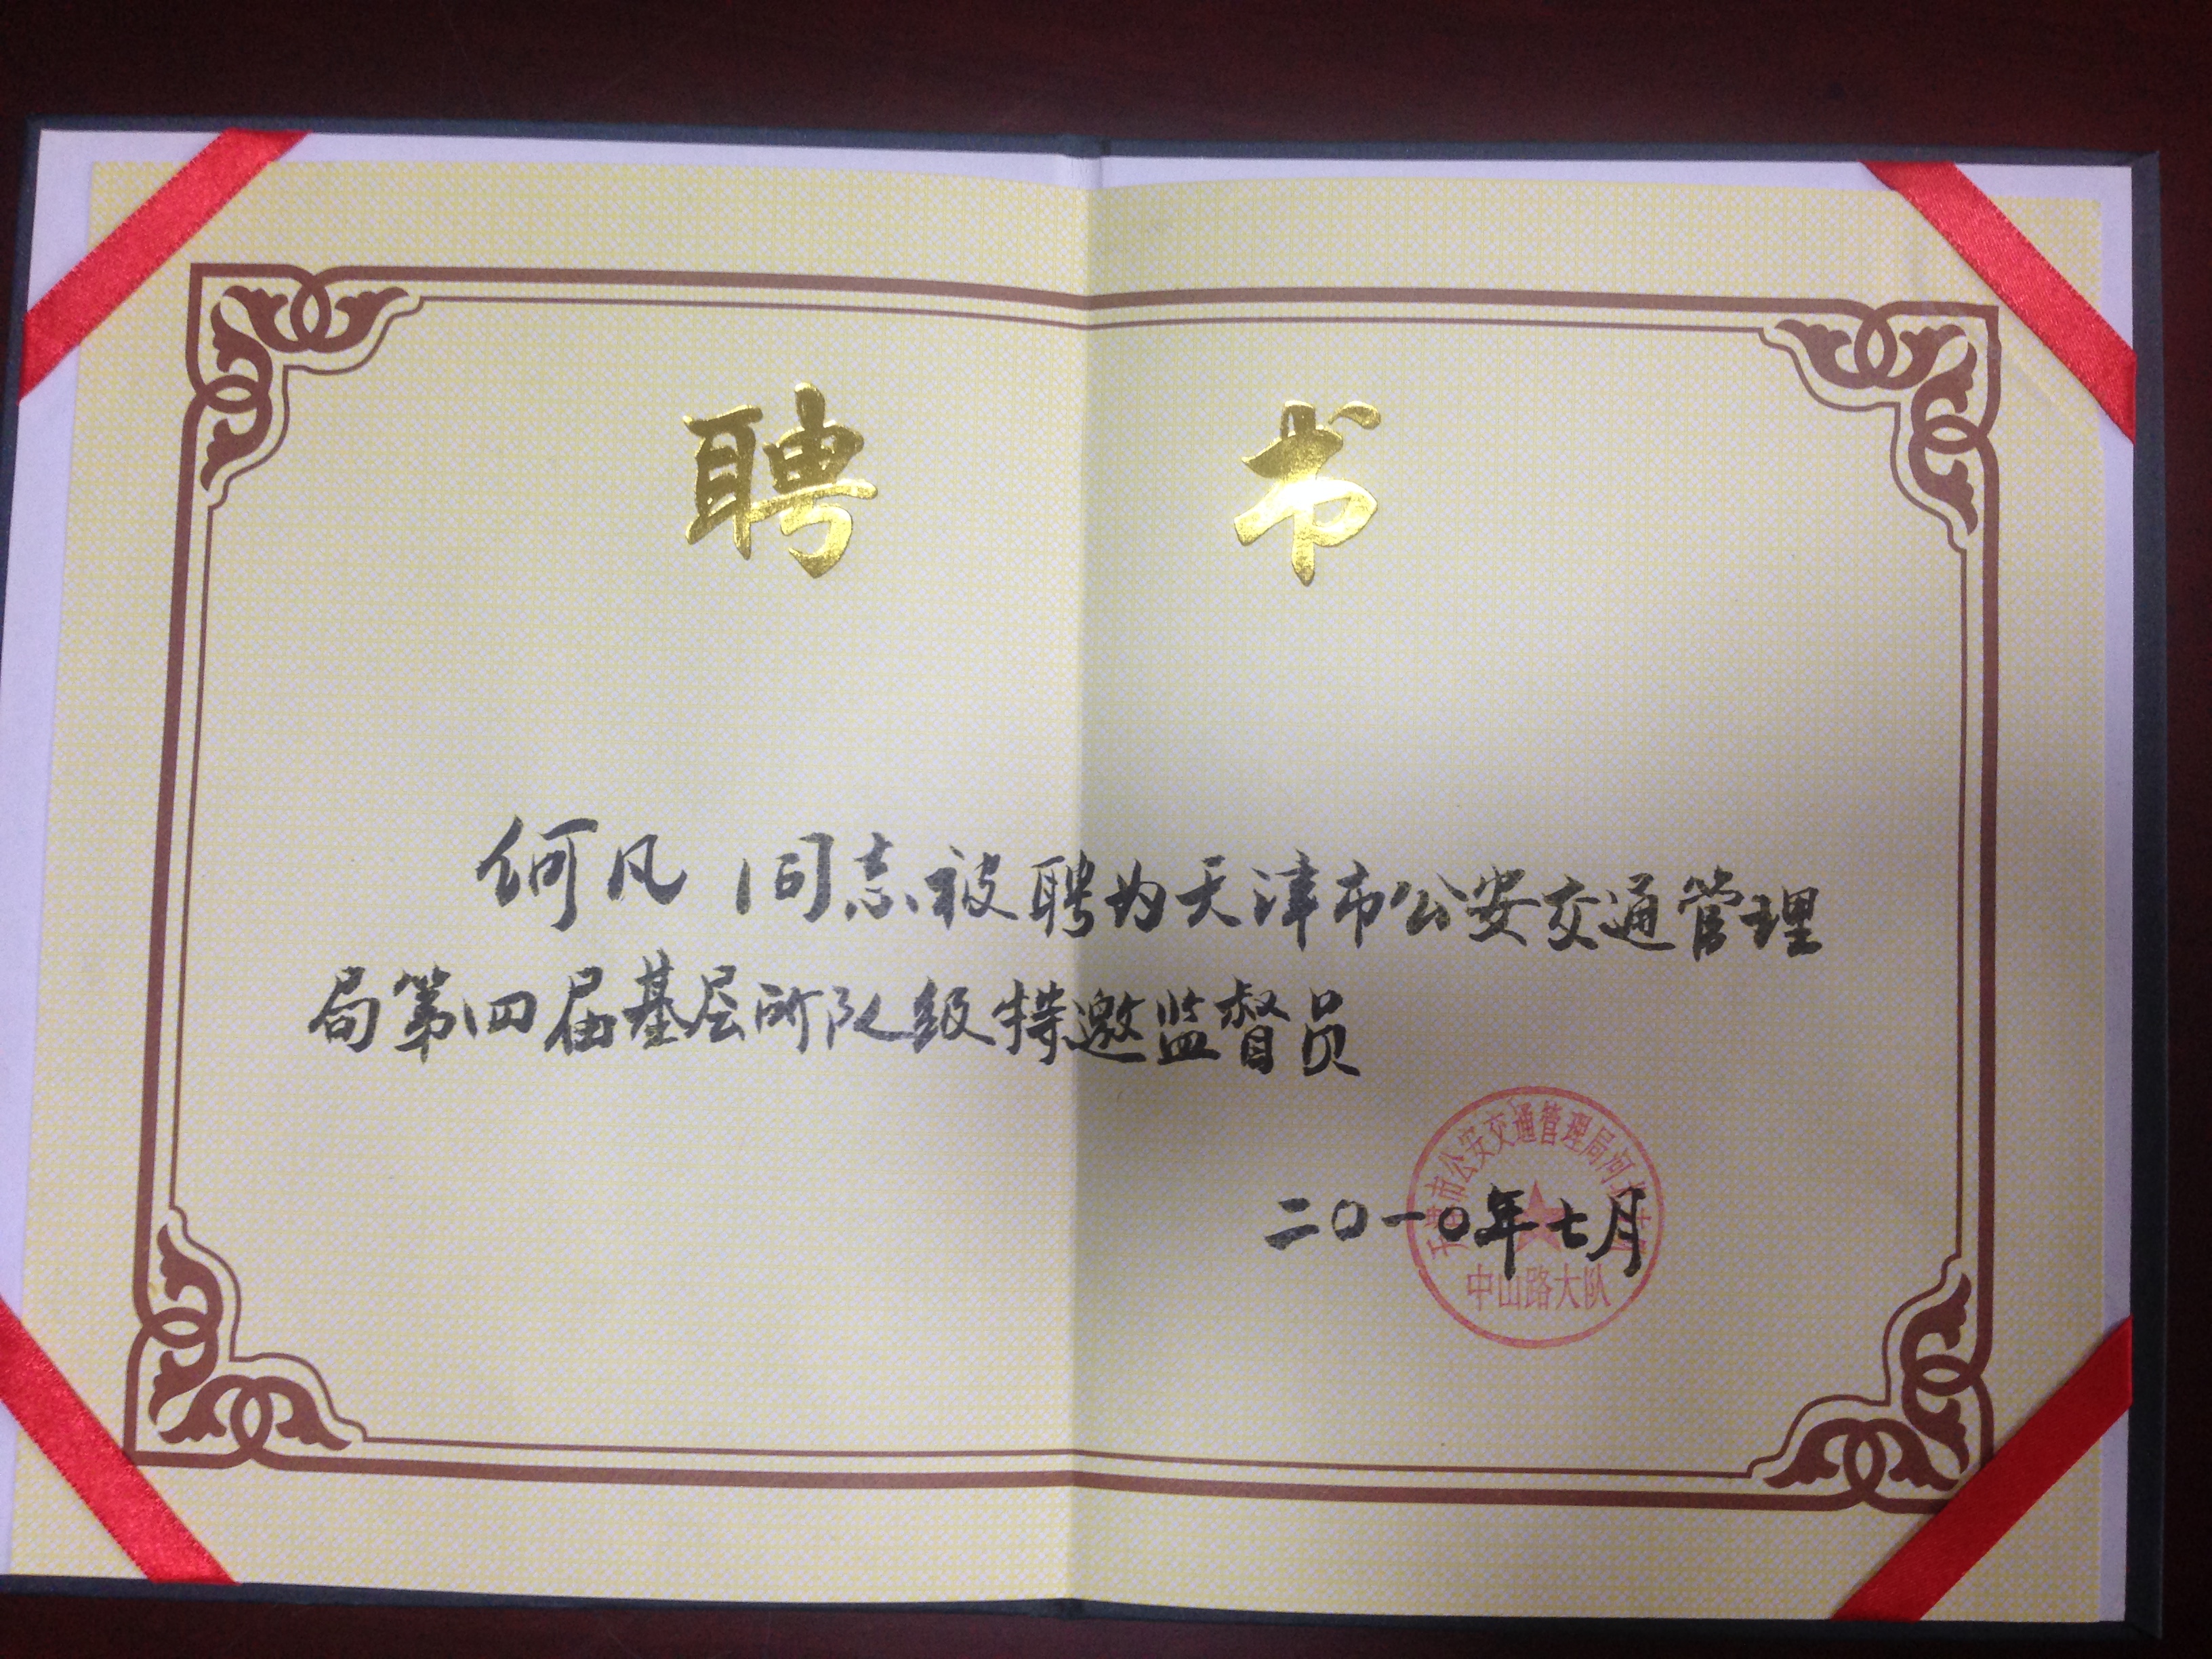 天津班车租赁公司及法人荣誉证书(图22)